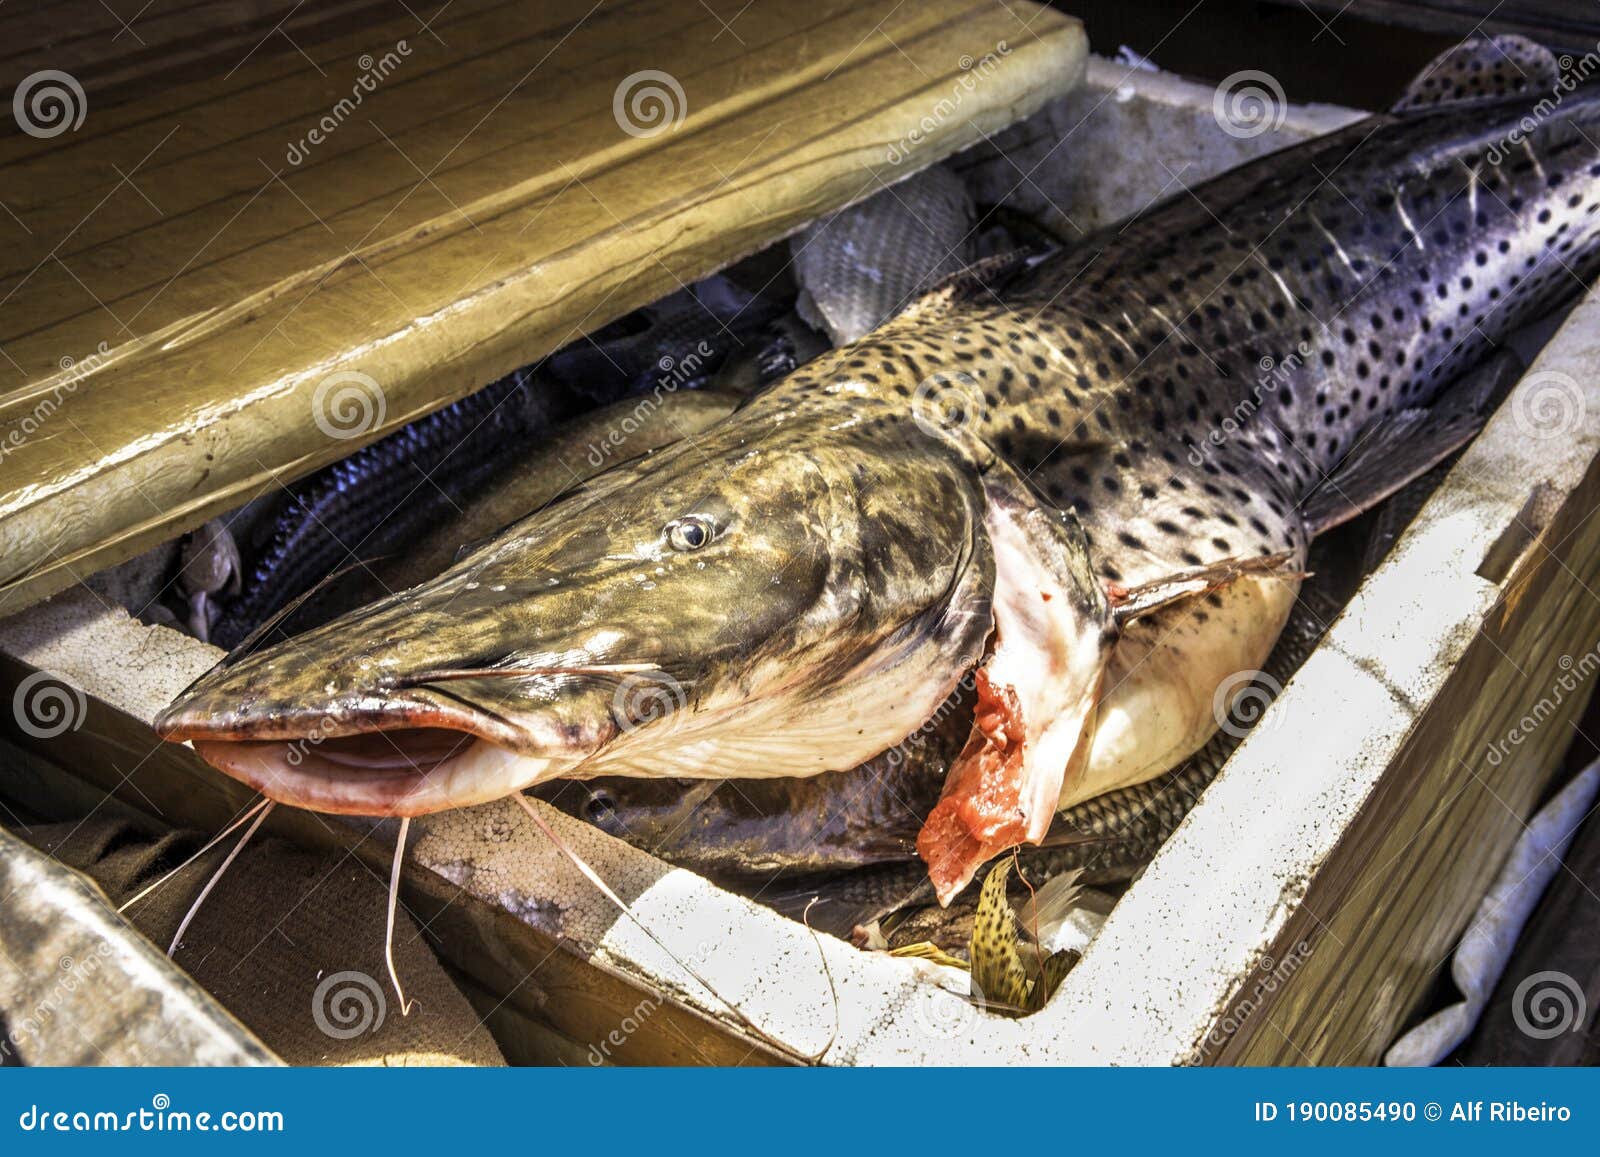 Fresh Catfish Inside a Styrofoam Box Stock Photo - Image of marine